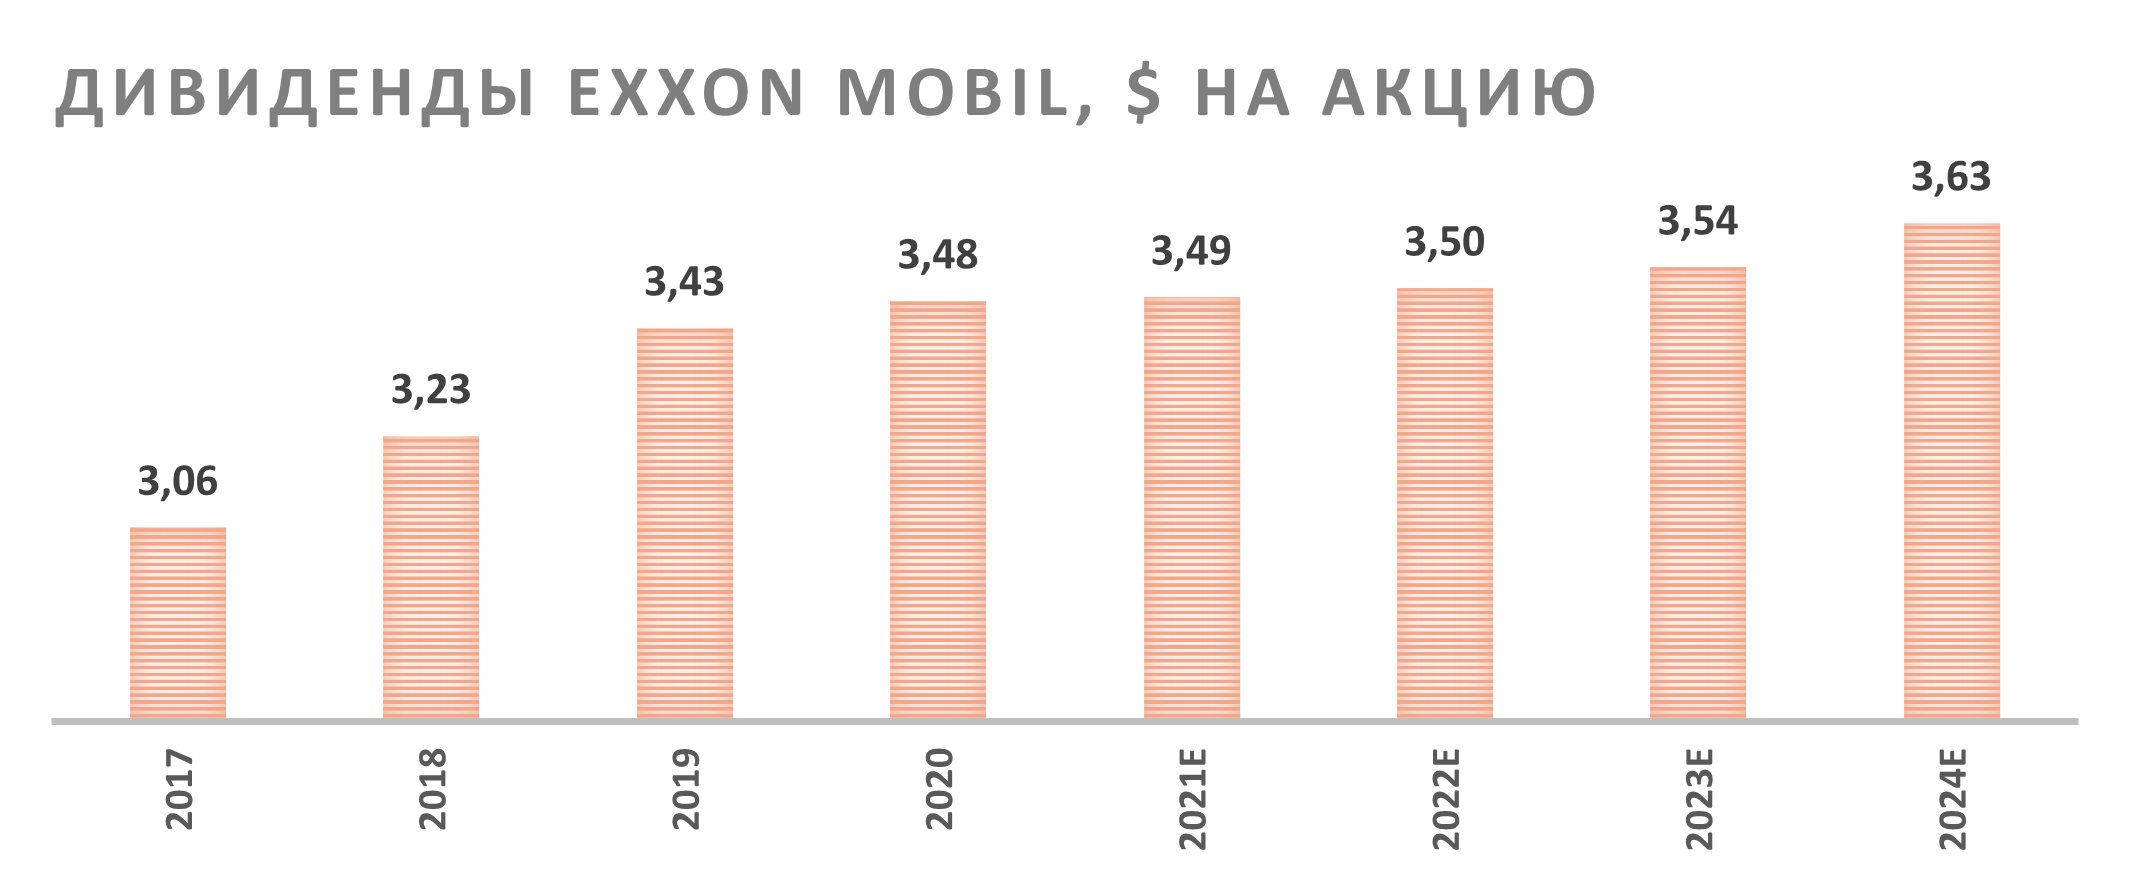 Дивиденды на одну акцию Exxon Mobil